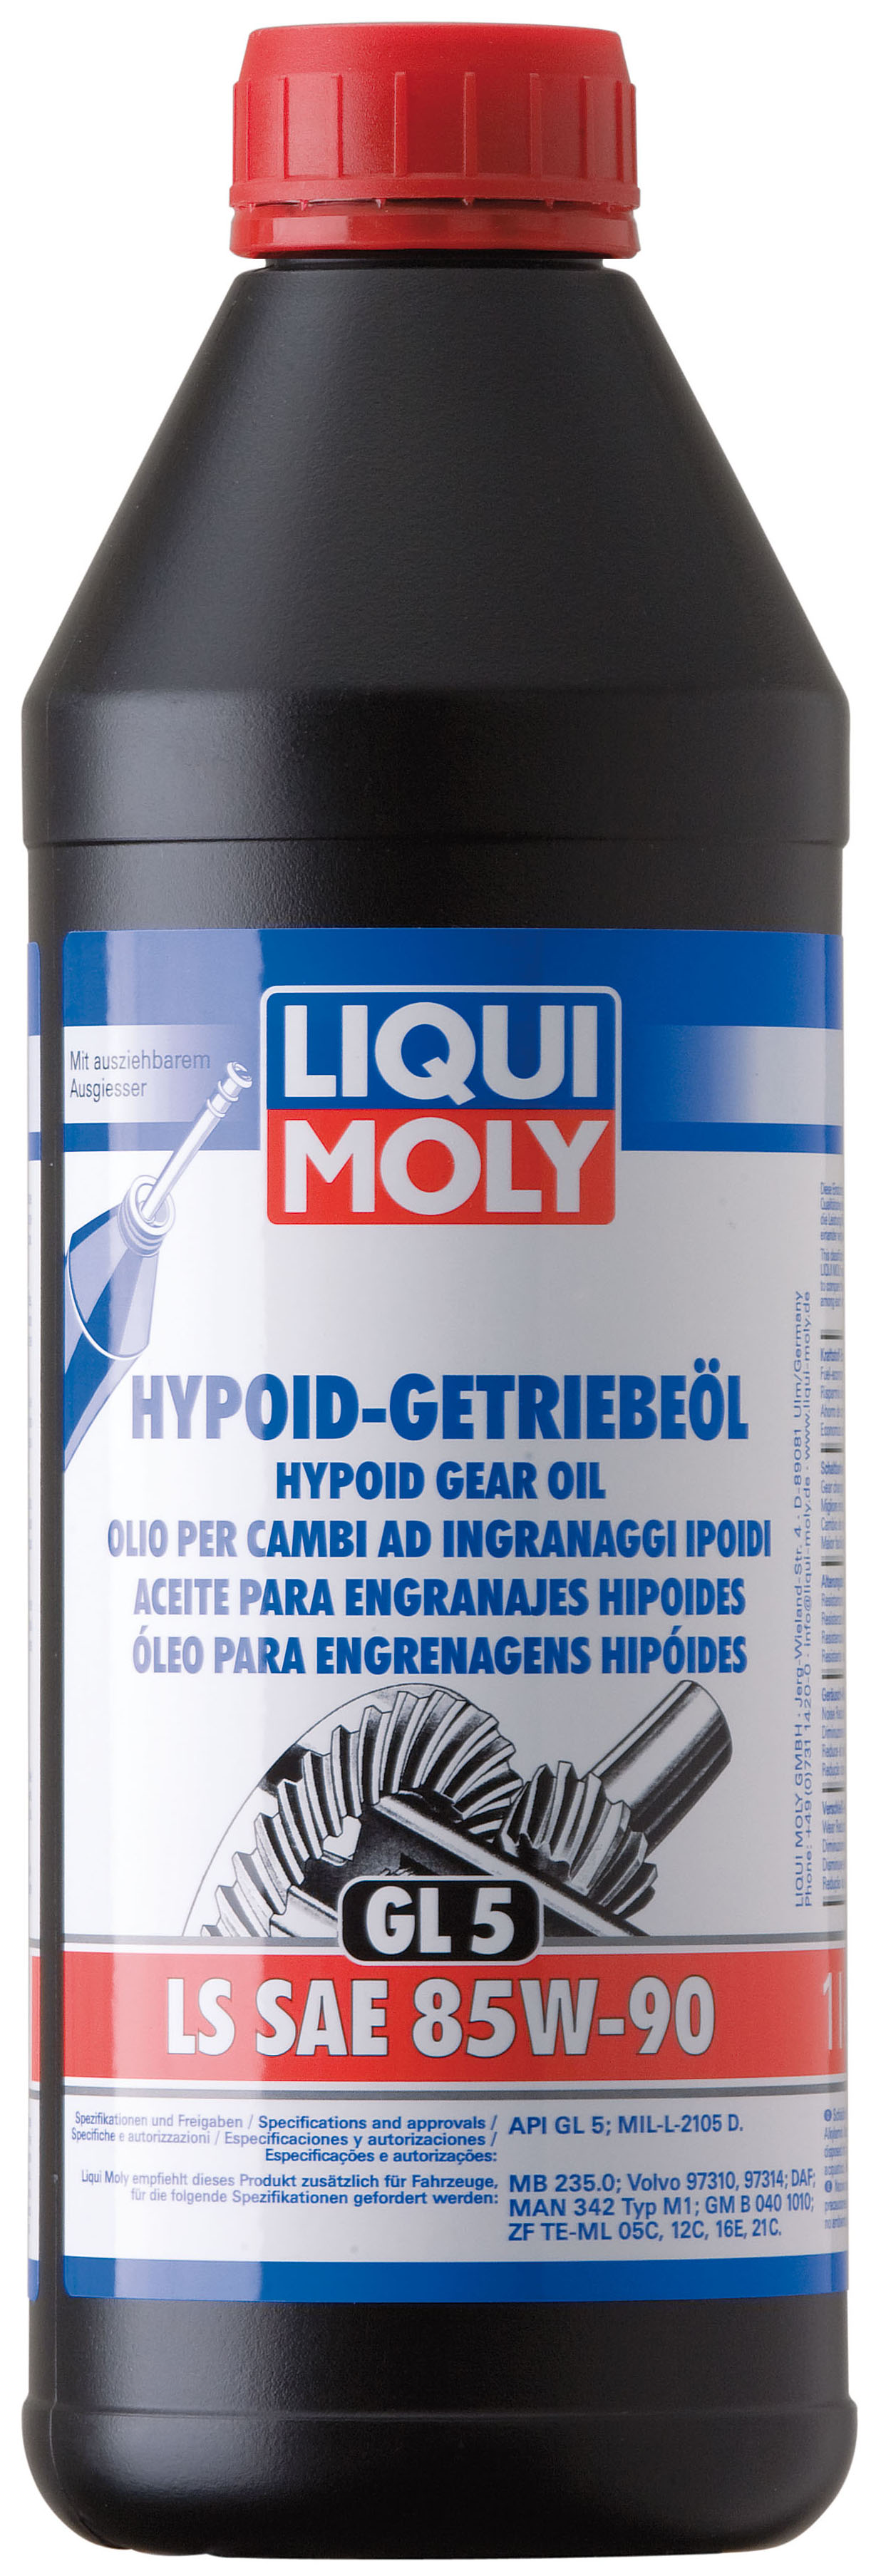 Купить запчасть LIQUI MOLY - 1410 Трансмиссионное масло Hypoid-Getriebeoil LS SAE 85W-90